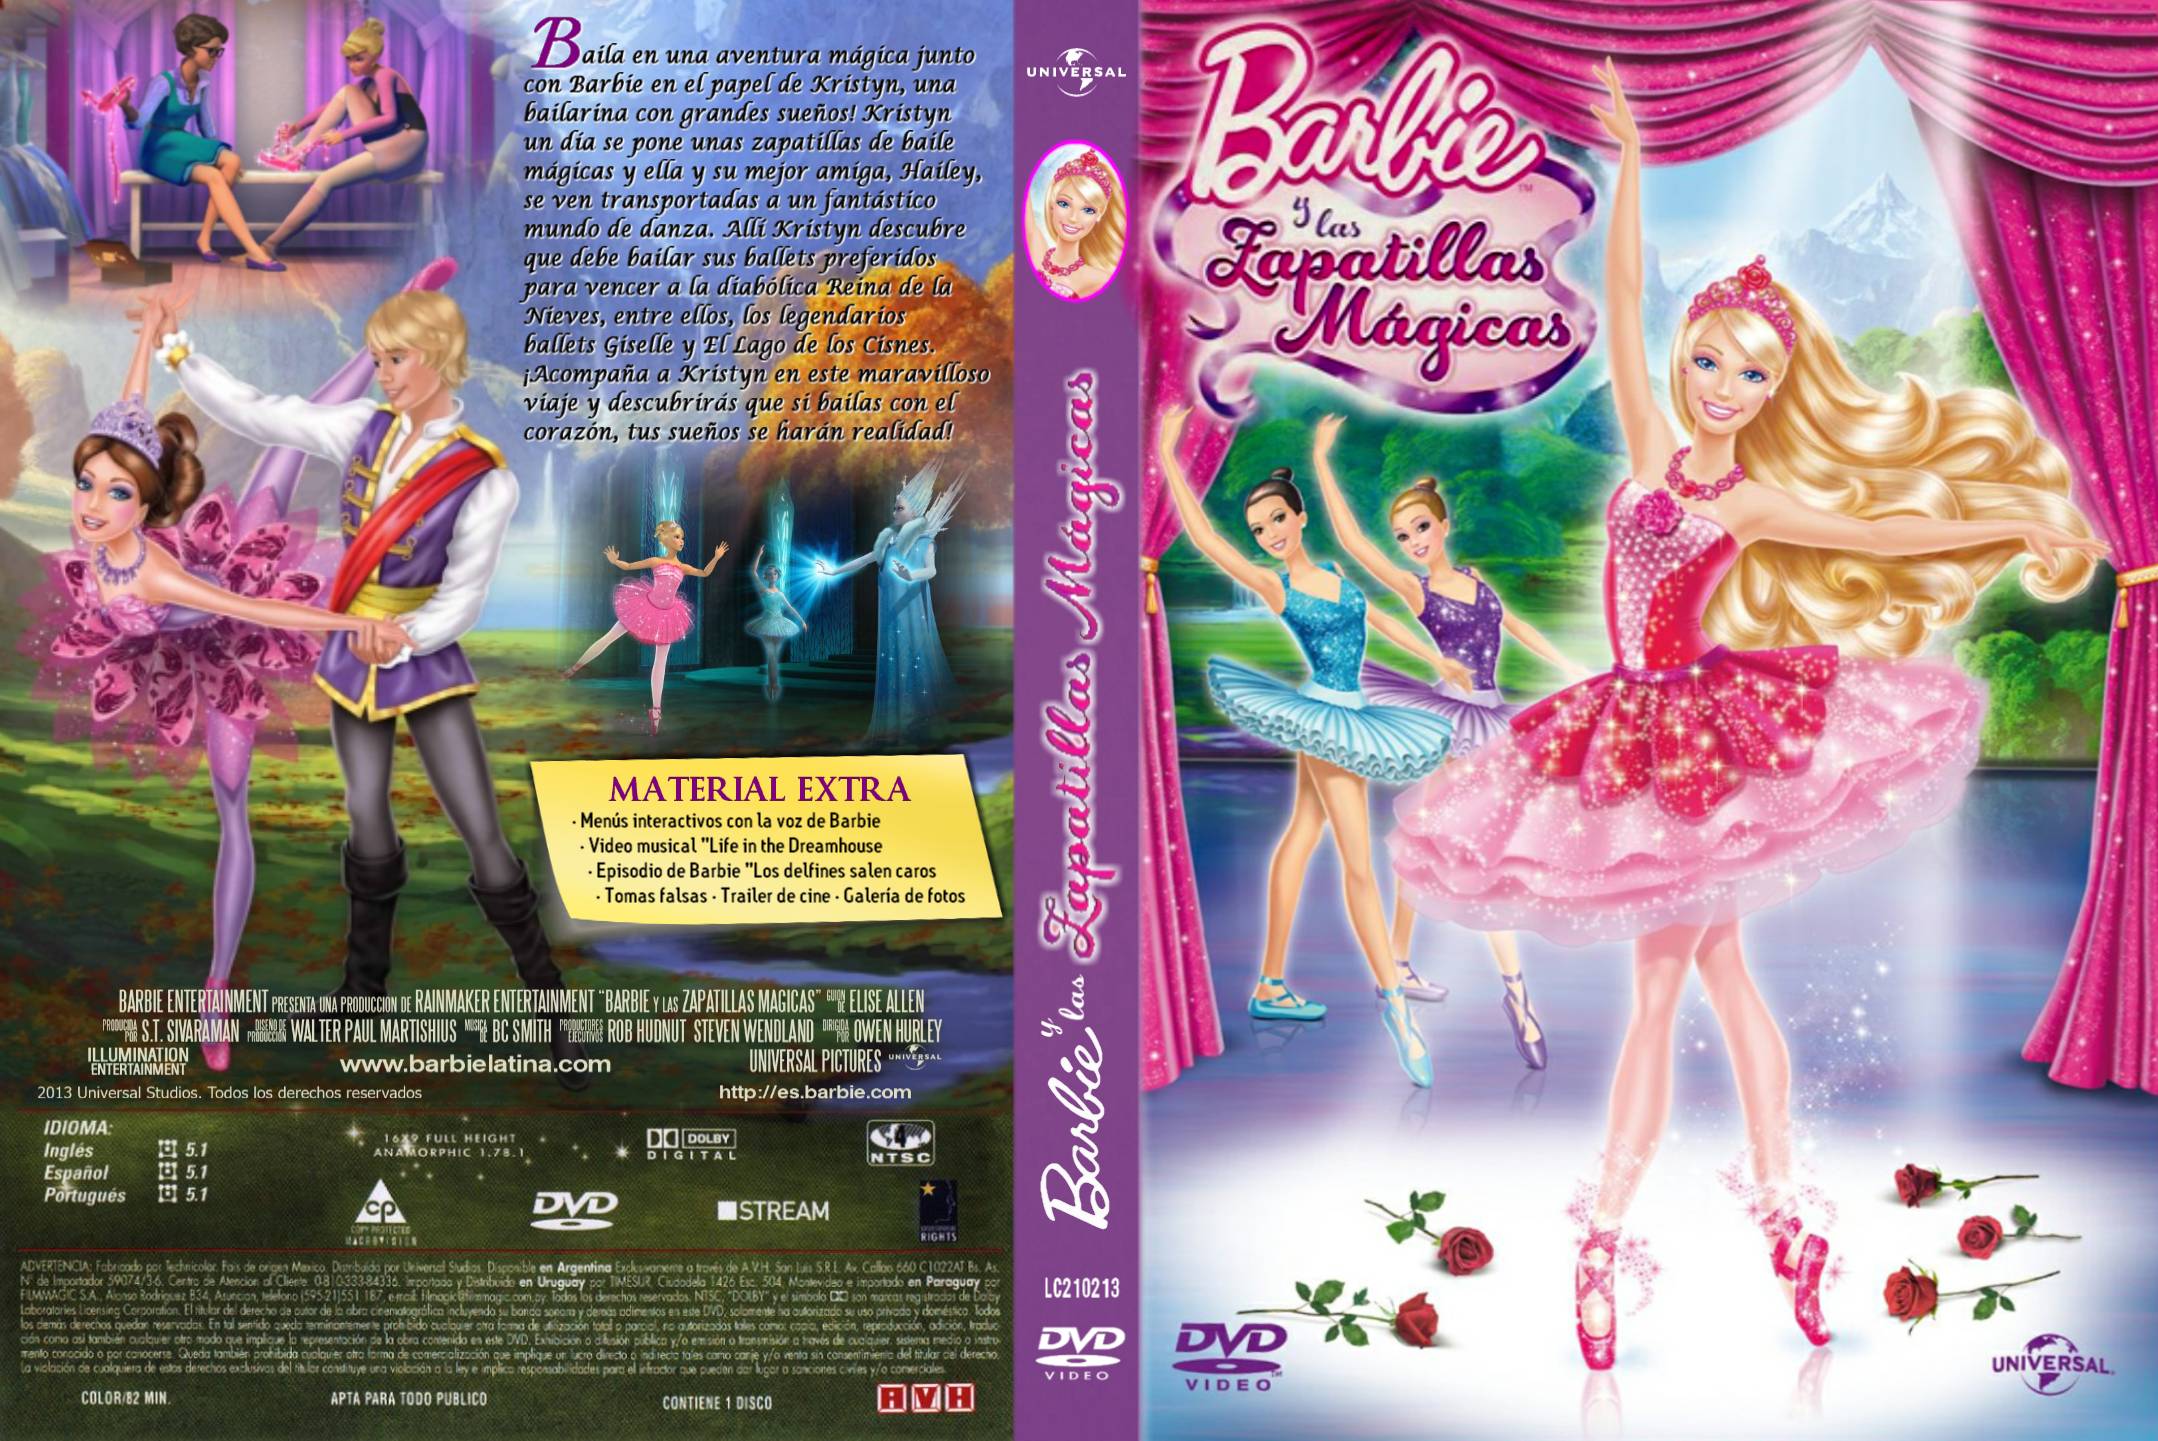 https://tododvdfullblog.files.wordpress.com/2013/07/barbie_y_las_zapatillas_magicas.jpg